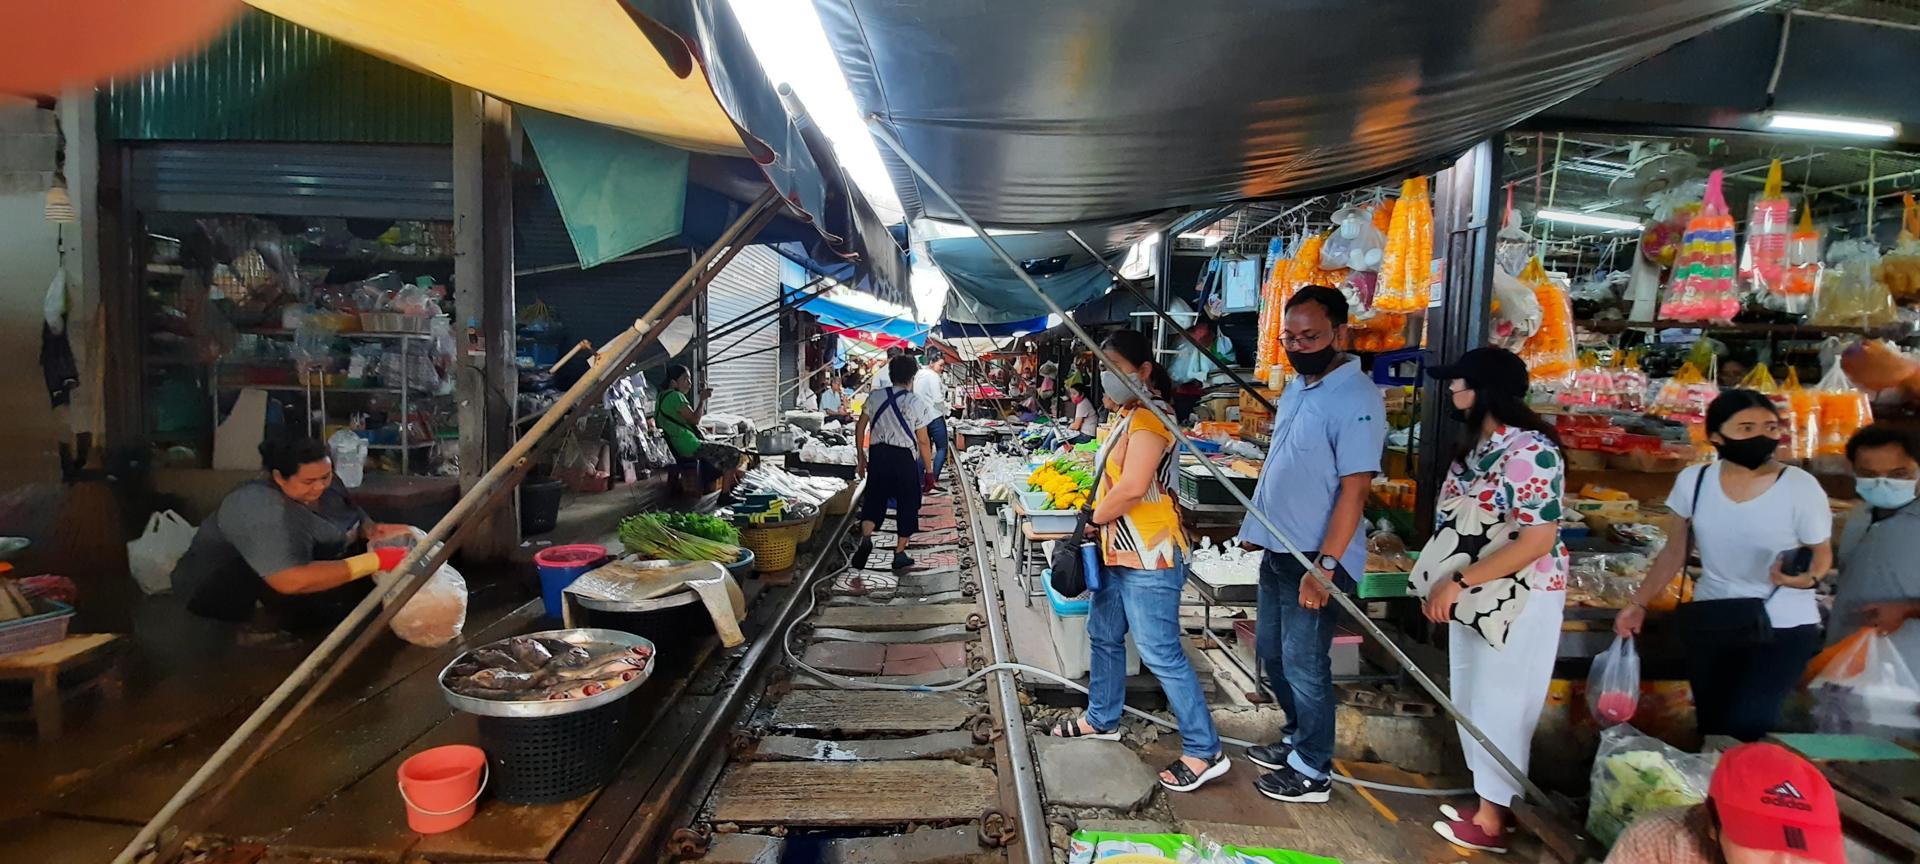 Le Marché de Mae Klong – un marché sur des rails